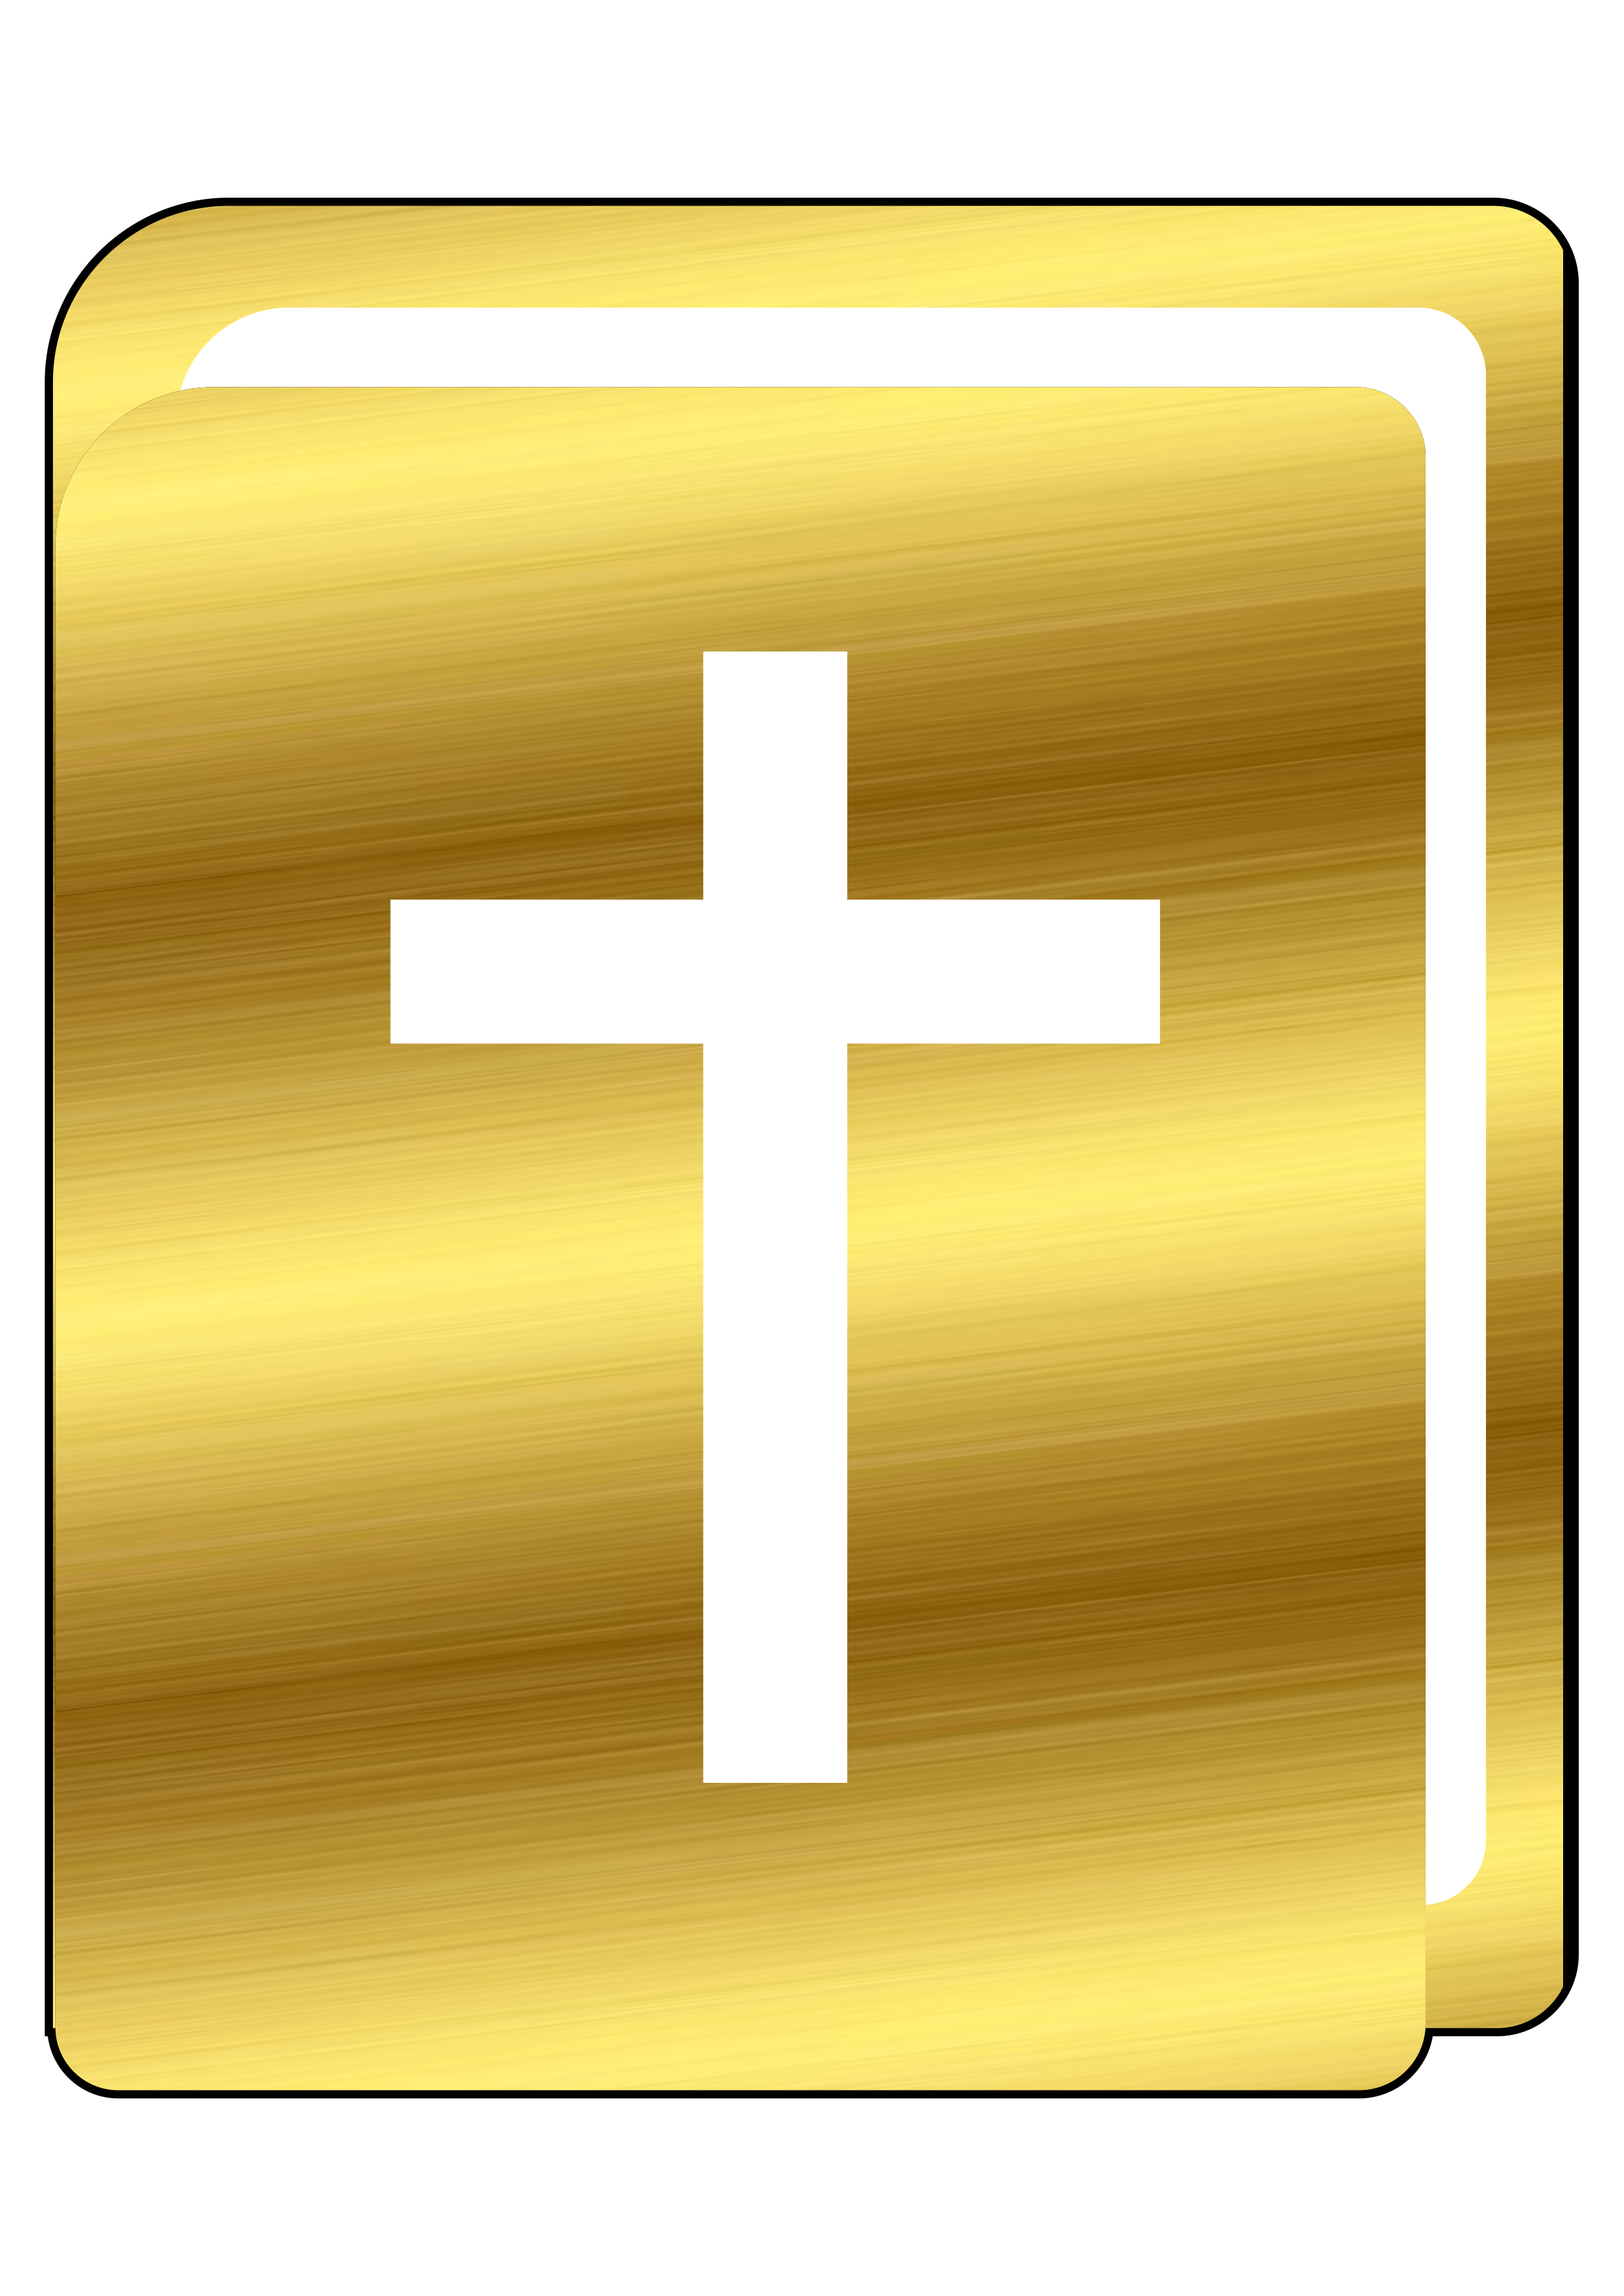 Bíblia sagrada dourada arte religiosa online palavra de Deus ícone imagem fundo png